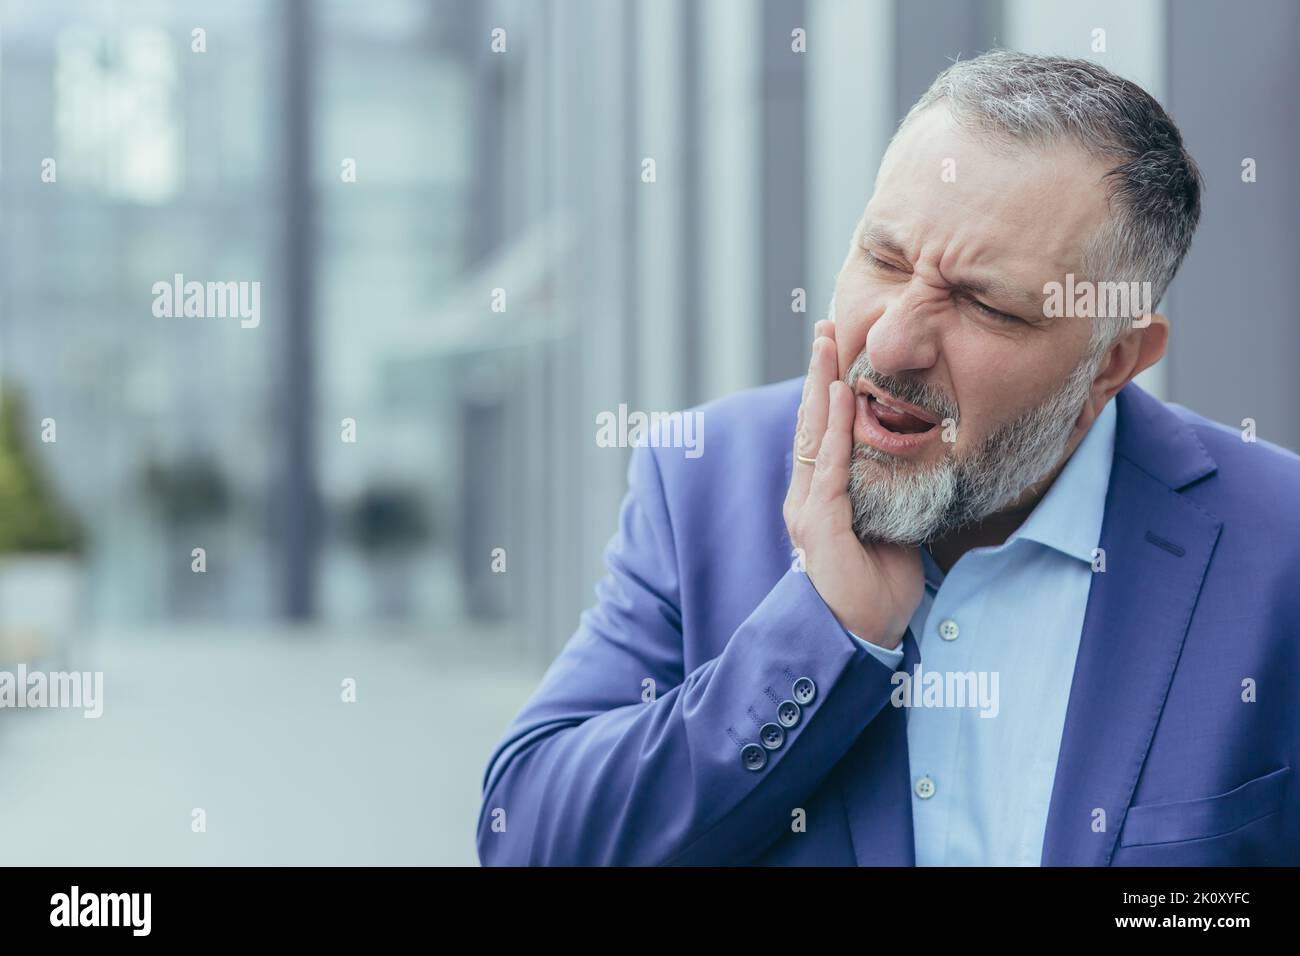 Zahnschmerzen. Nahaufnahme. Älterer Mann, Geschäftsmann, Büroangestellter, der auf der Straße in der Nähe der Arbeit steht, seine Wange hält, unerträgliche Zahnschmerzen empfindet, sich grimazend anfühlt, braucht Hilfe. Stockfoto